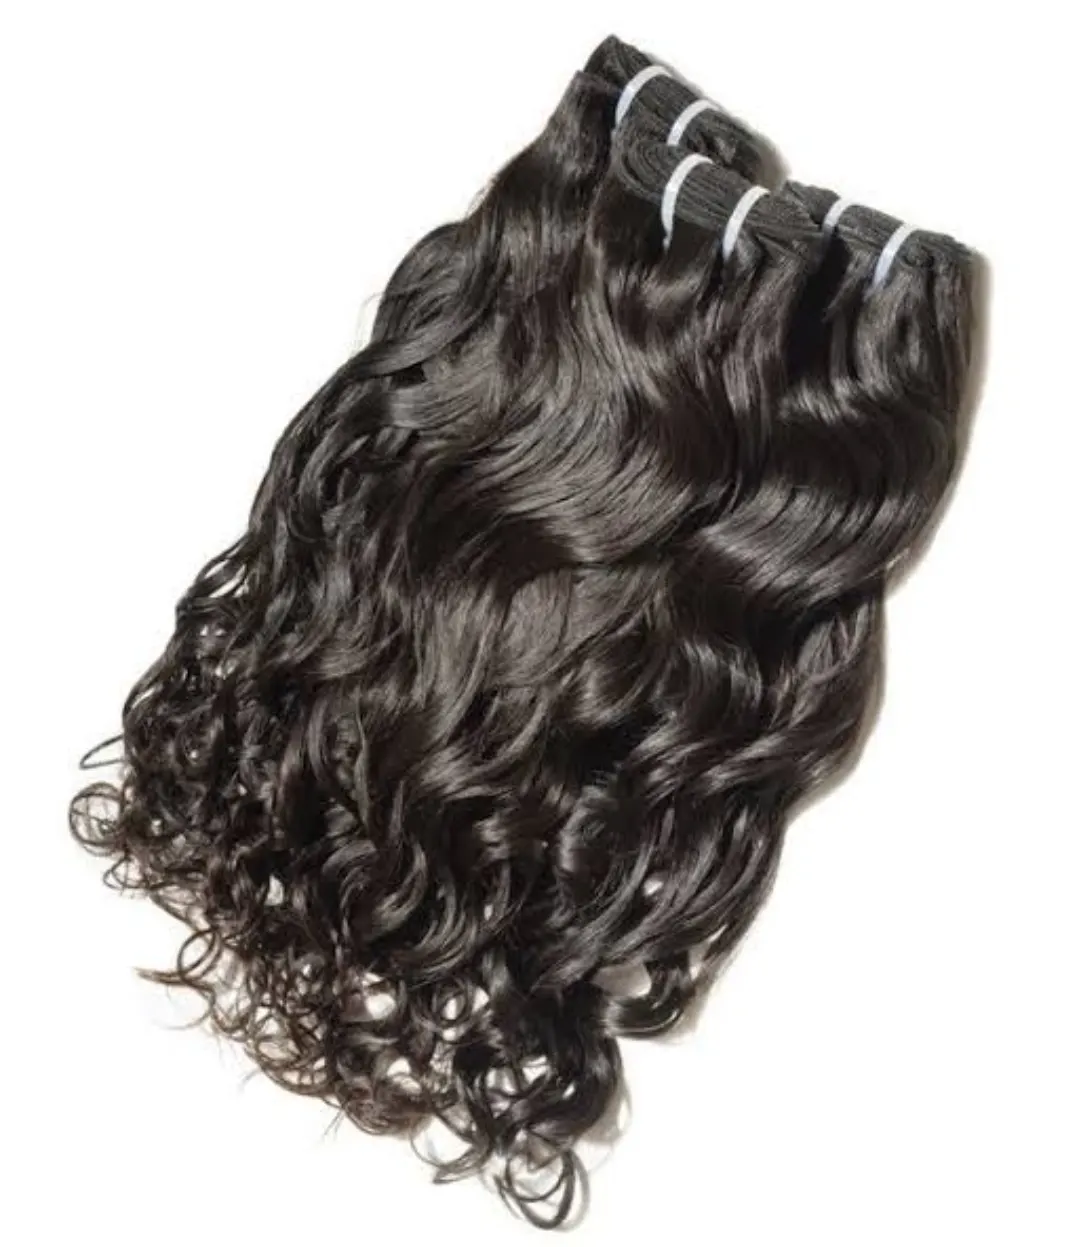 एक्सटेंशन पर नया फैशन क्लिप प्राकृतिक वर्जिन मानव बाल मंदिर वर्जिन असंसाधित बाल 26 इंच क्लिप बालों का रंग काला